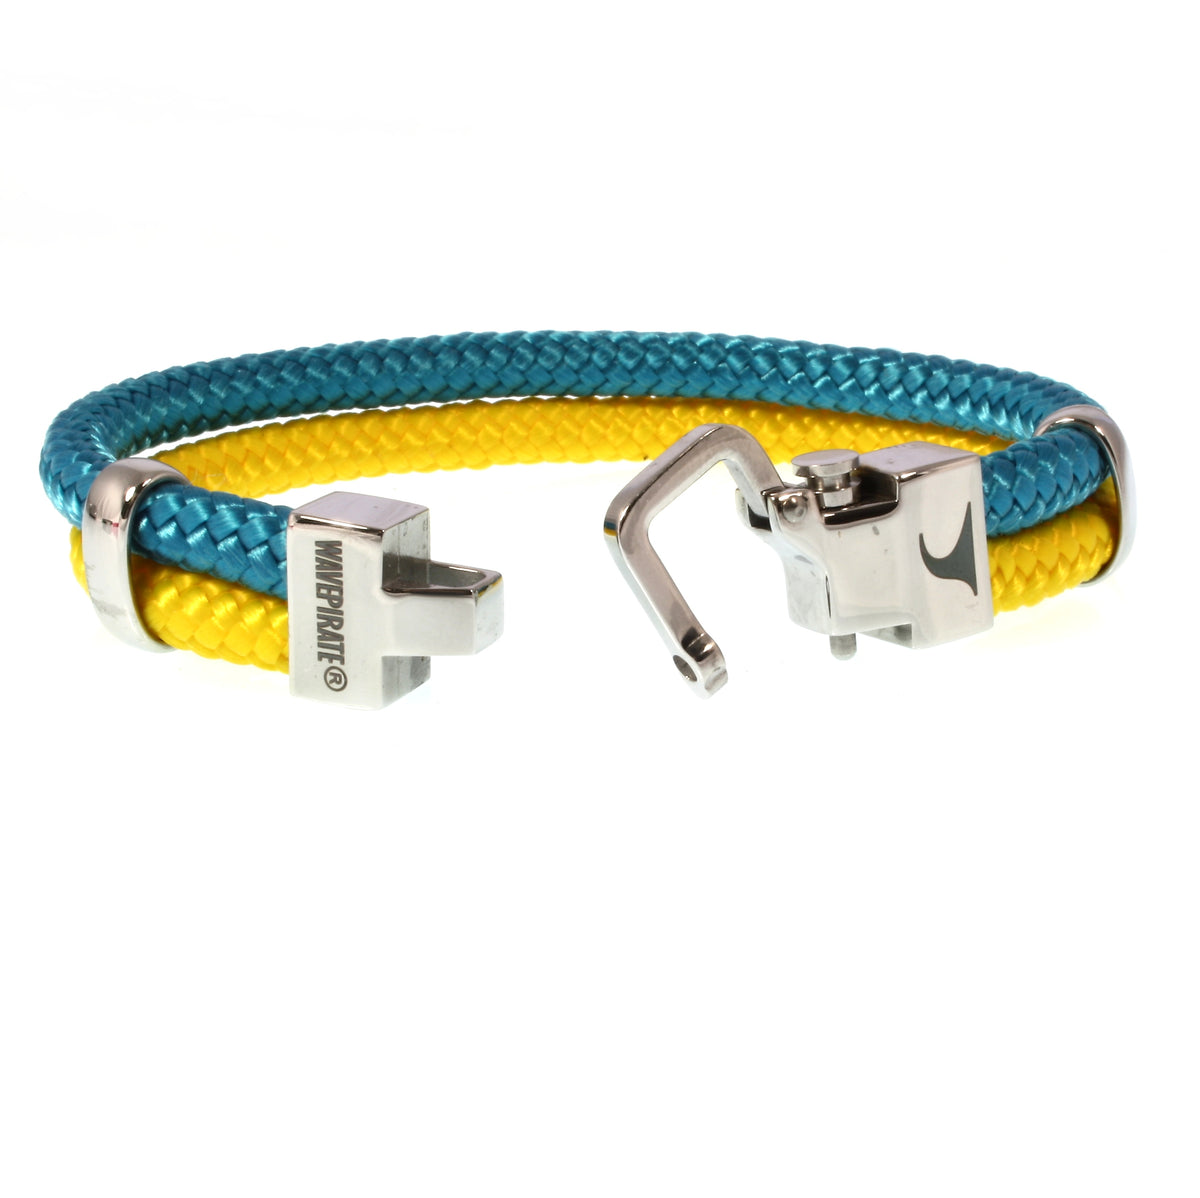 Modisches-Herren-Segeltau-Armband-Turn-blau-gelb-geflochten-Edelstahlverschluss-offen-wavepirate-shop-st